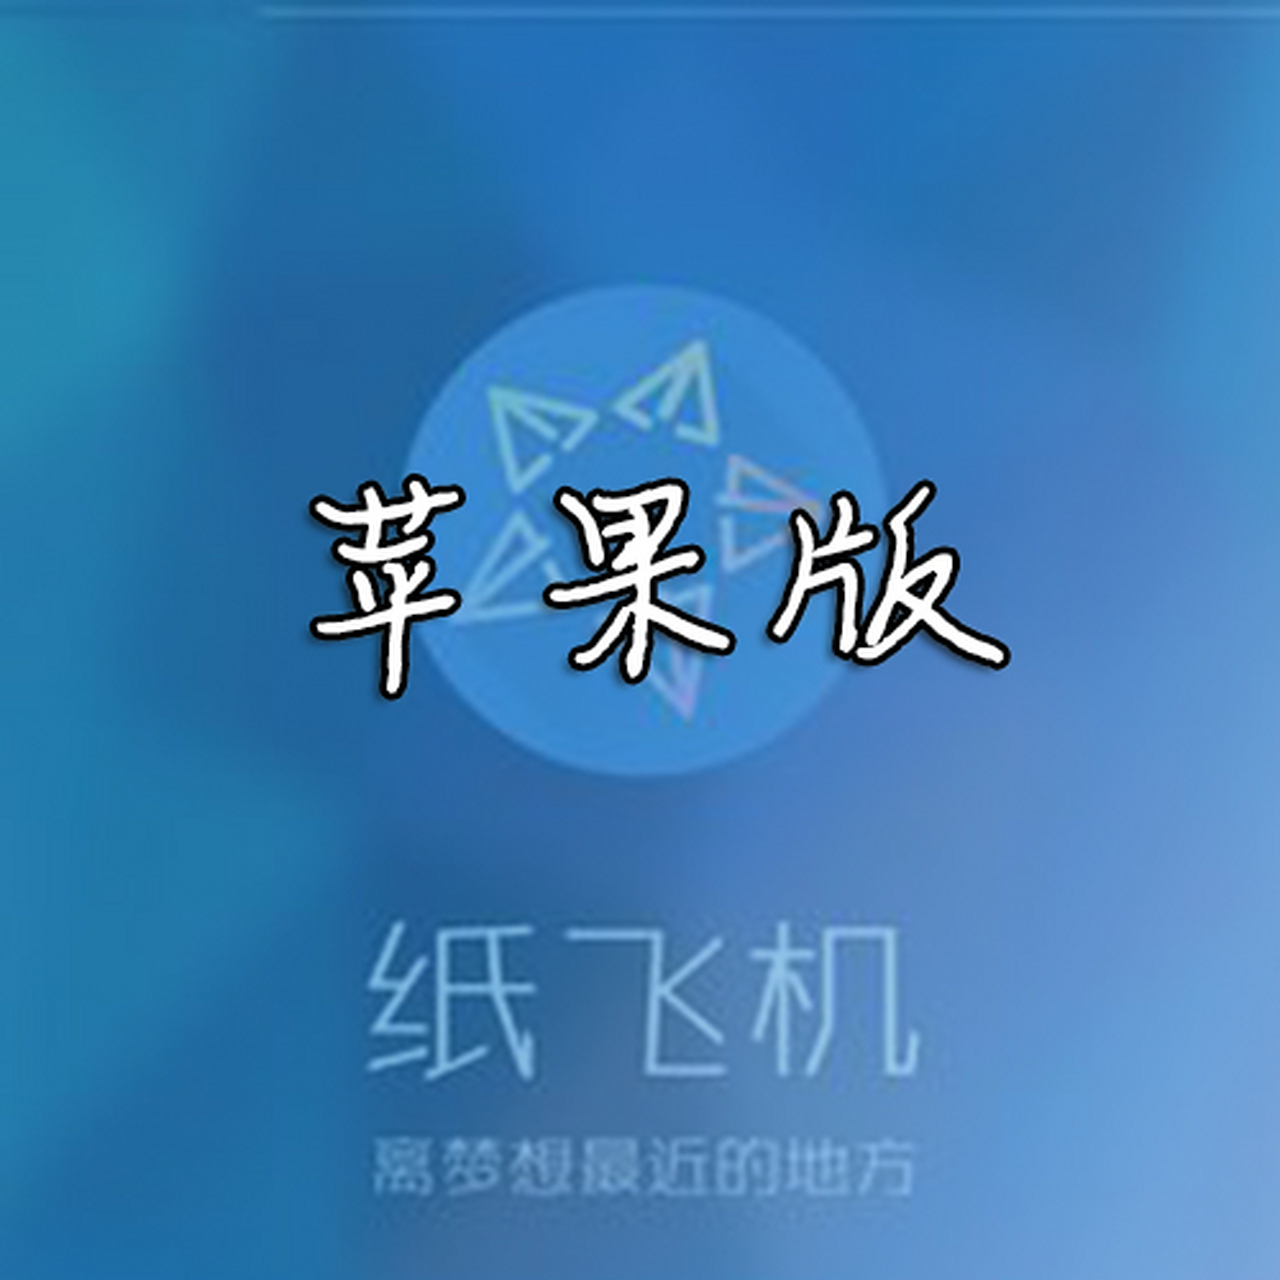 纸飞机下载中文-纸飞机下载中文包方法